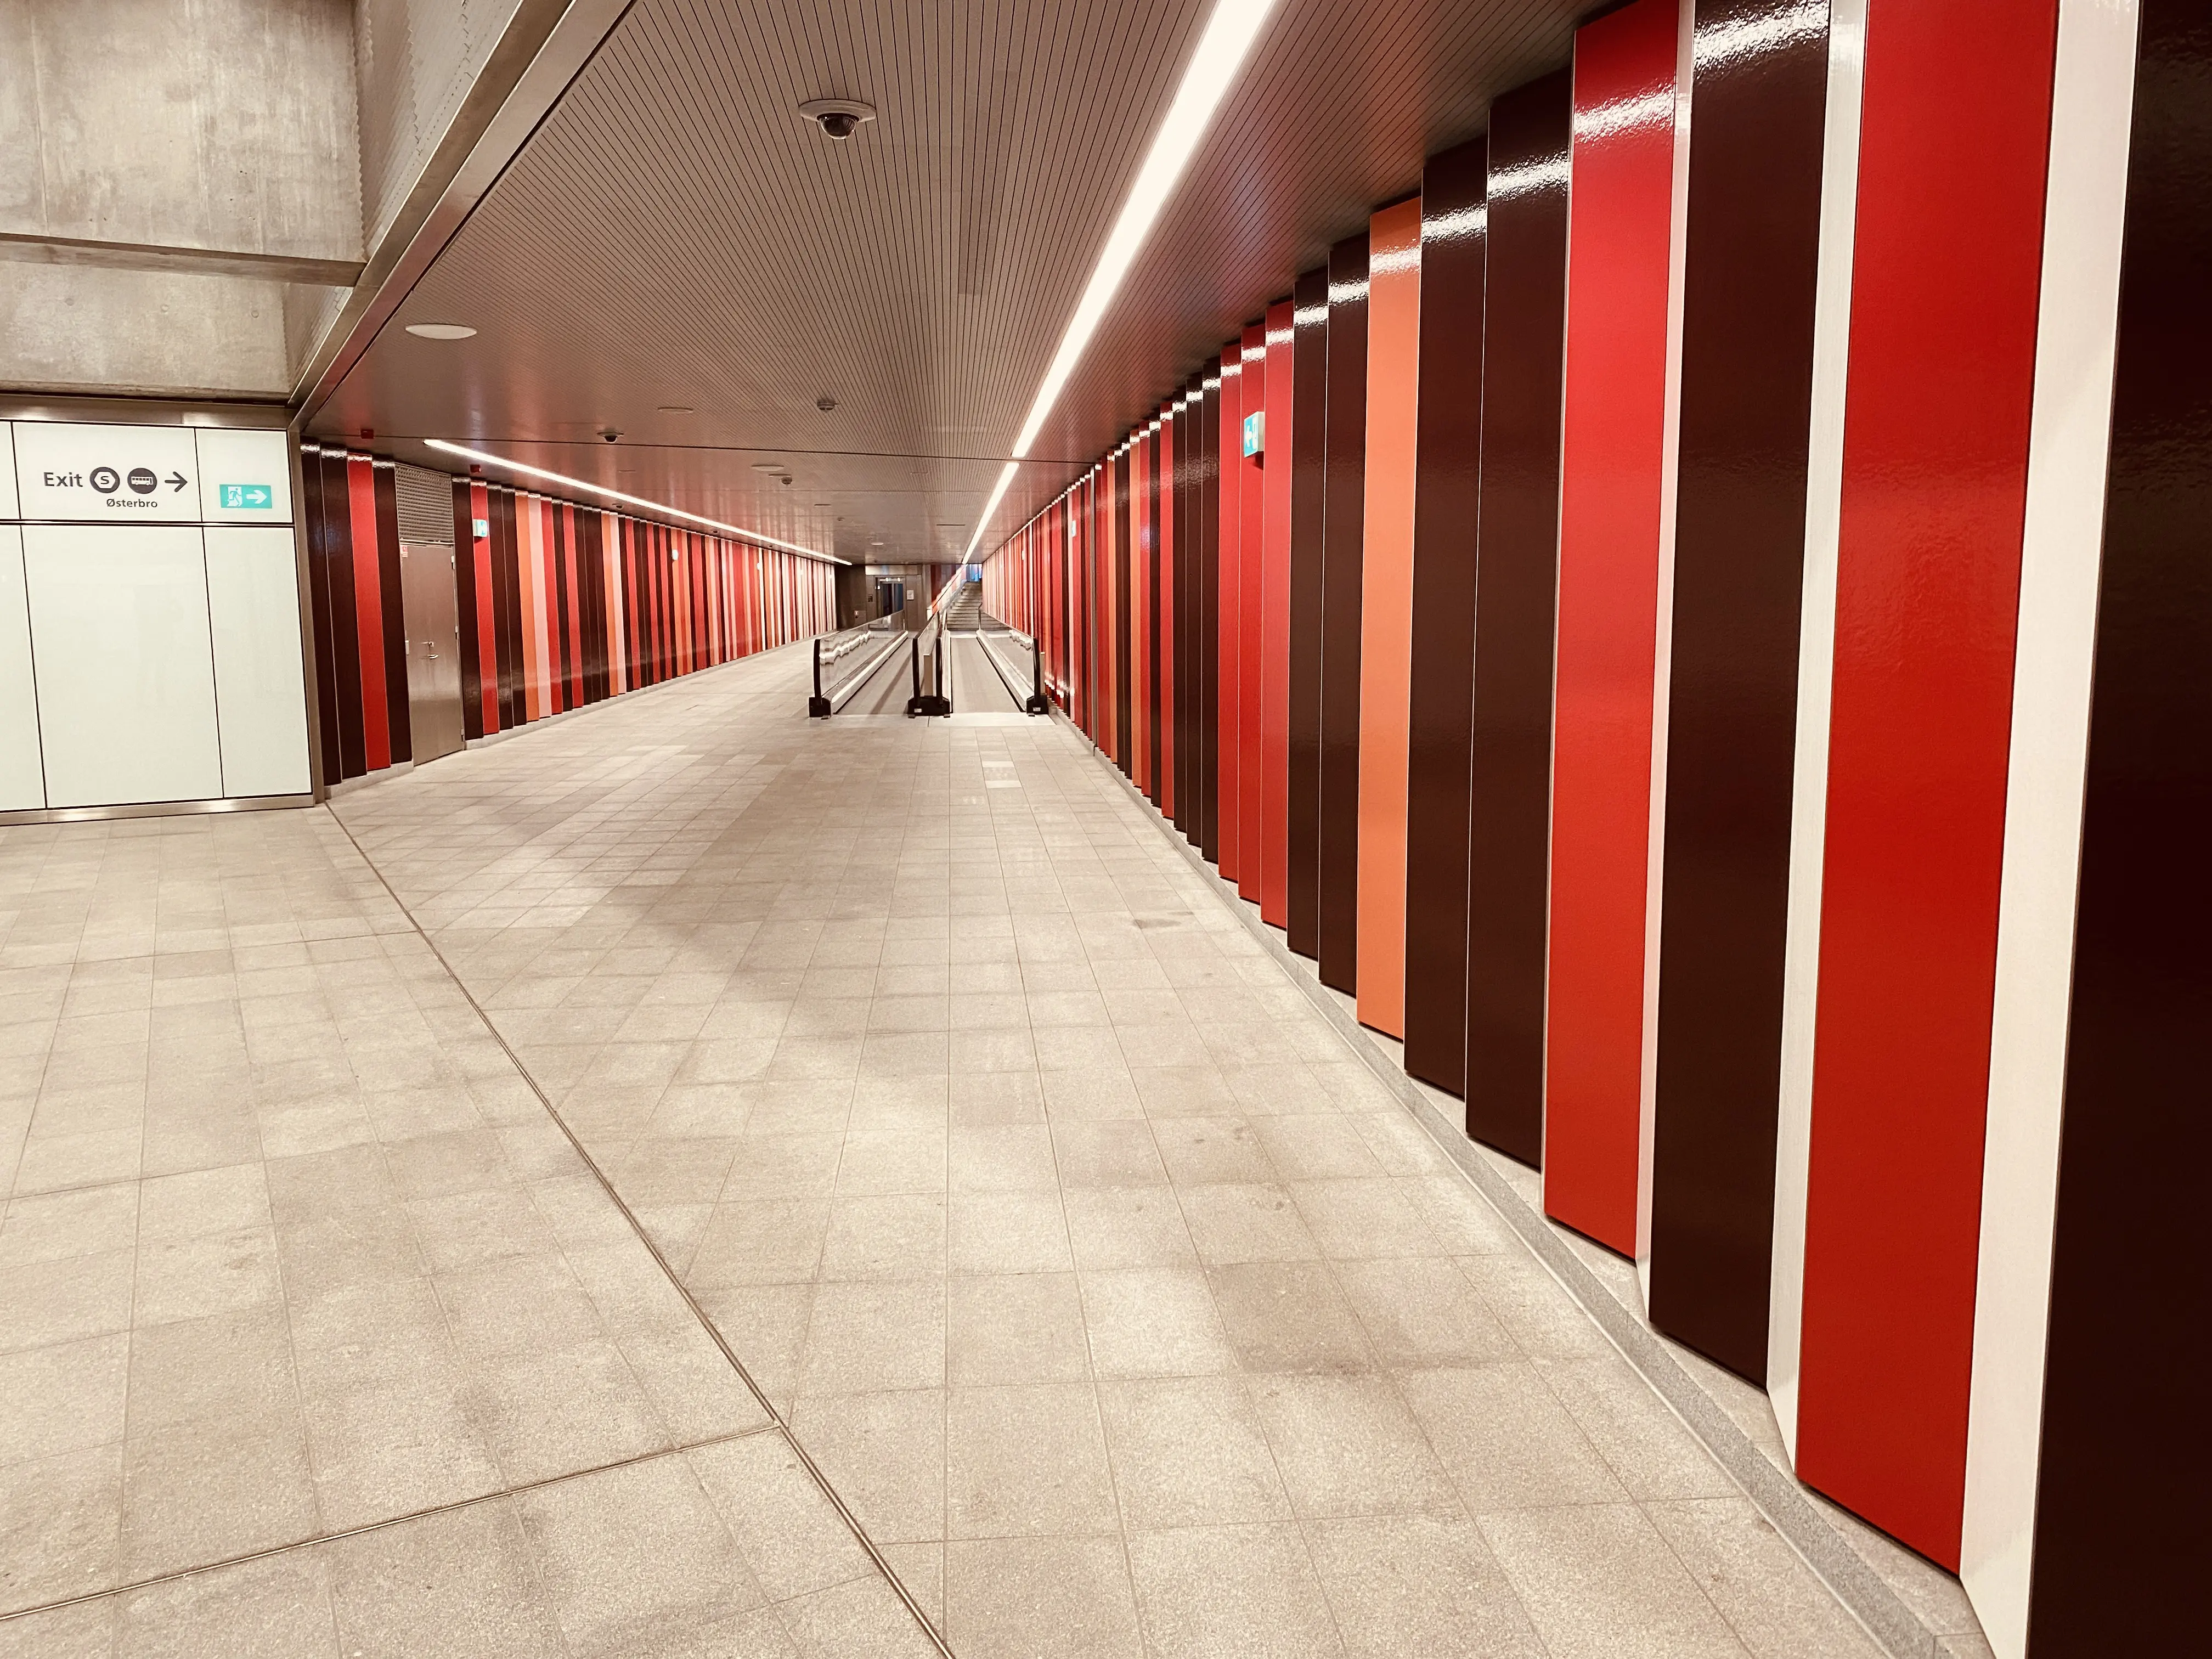 Billede af Nordhavn Metrostation, som har en varm og dyb rød farve, der signalerer trafik, transport og transit.